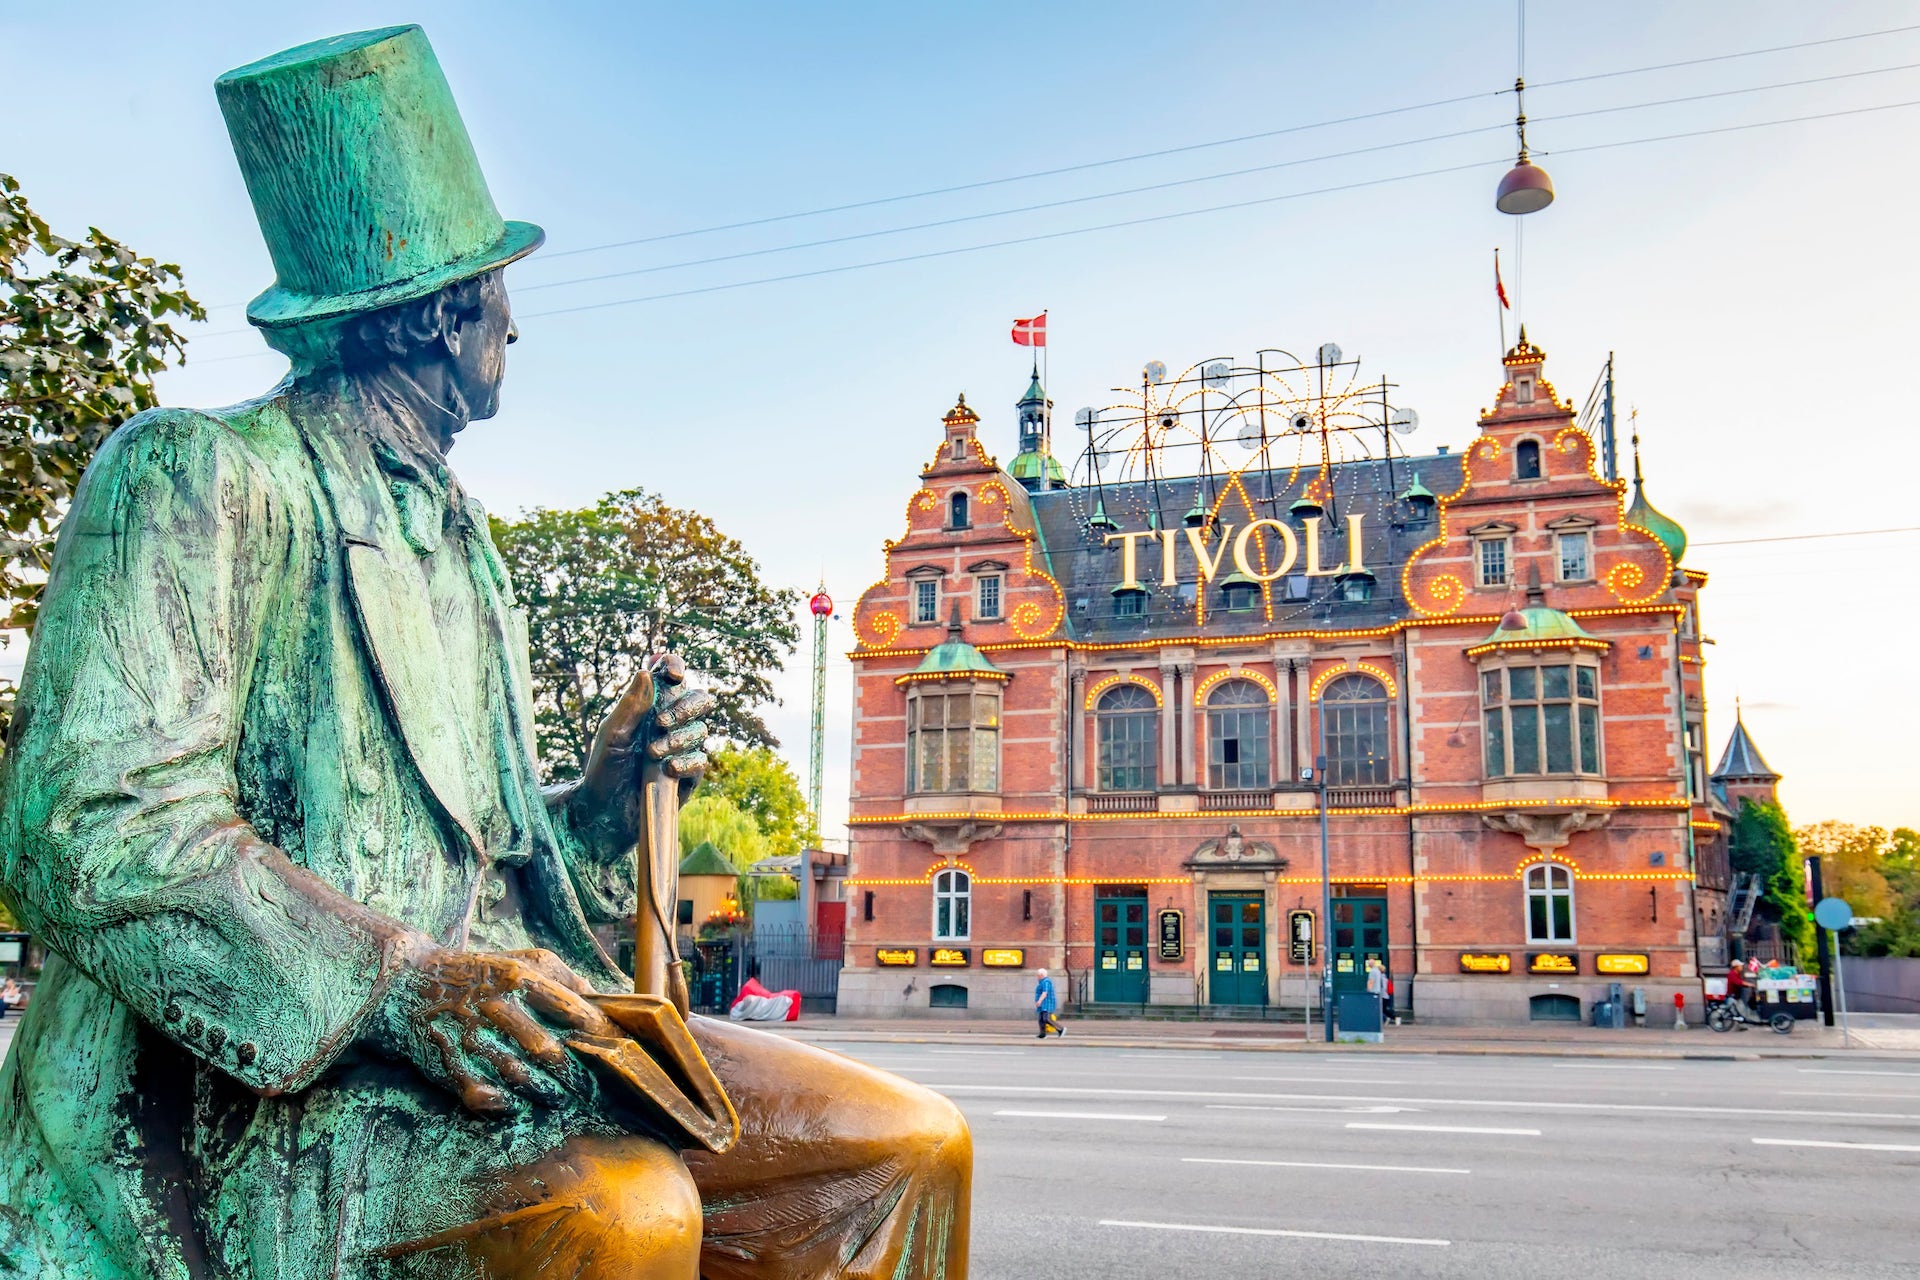 Der Freizeitpark Tivoli gehört zu den Top Sehenswürdigkeiten in Kopenhagen